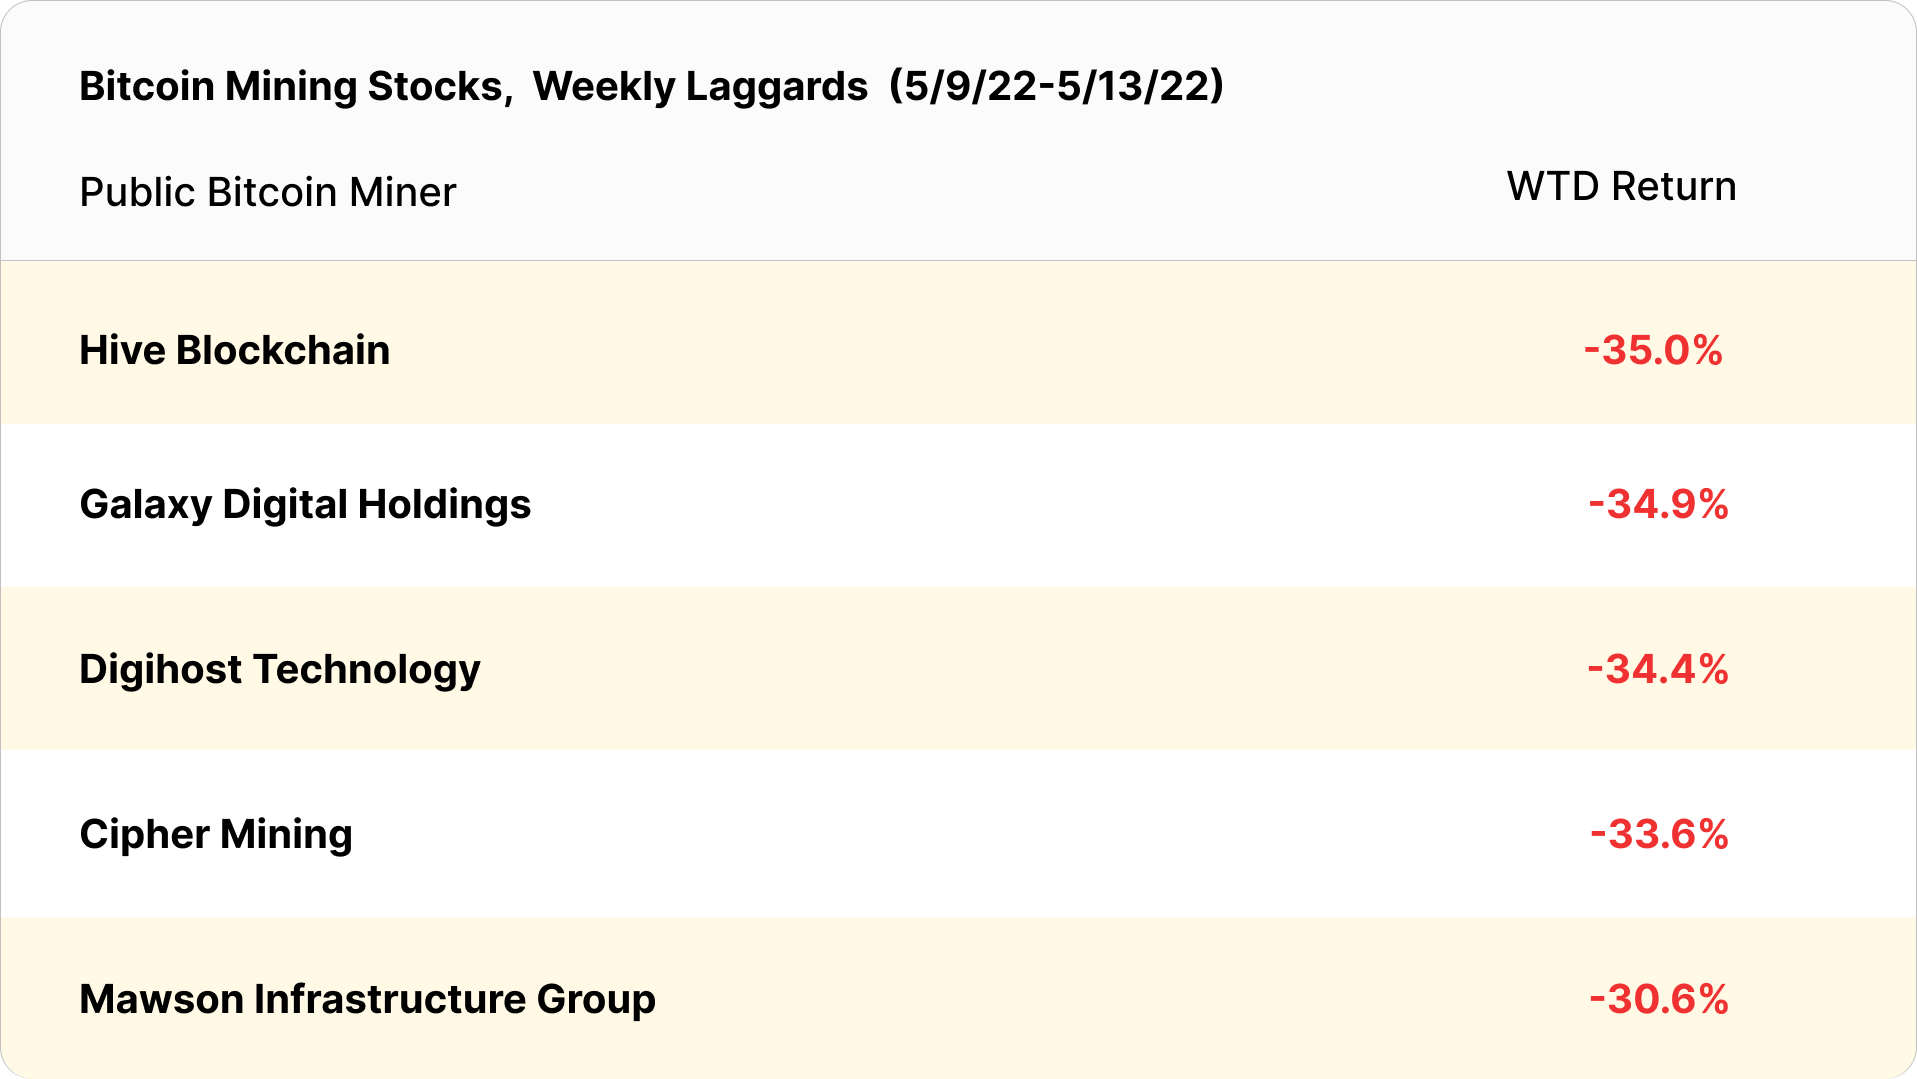 bitcoin mining stocks weekly laggards (May 9 - May 13, 2022)